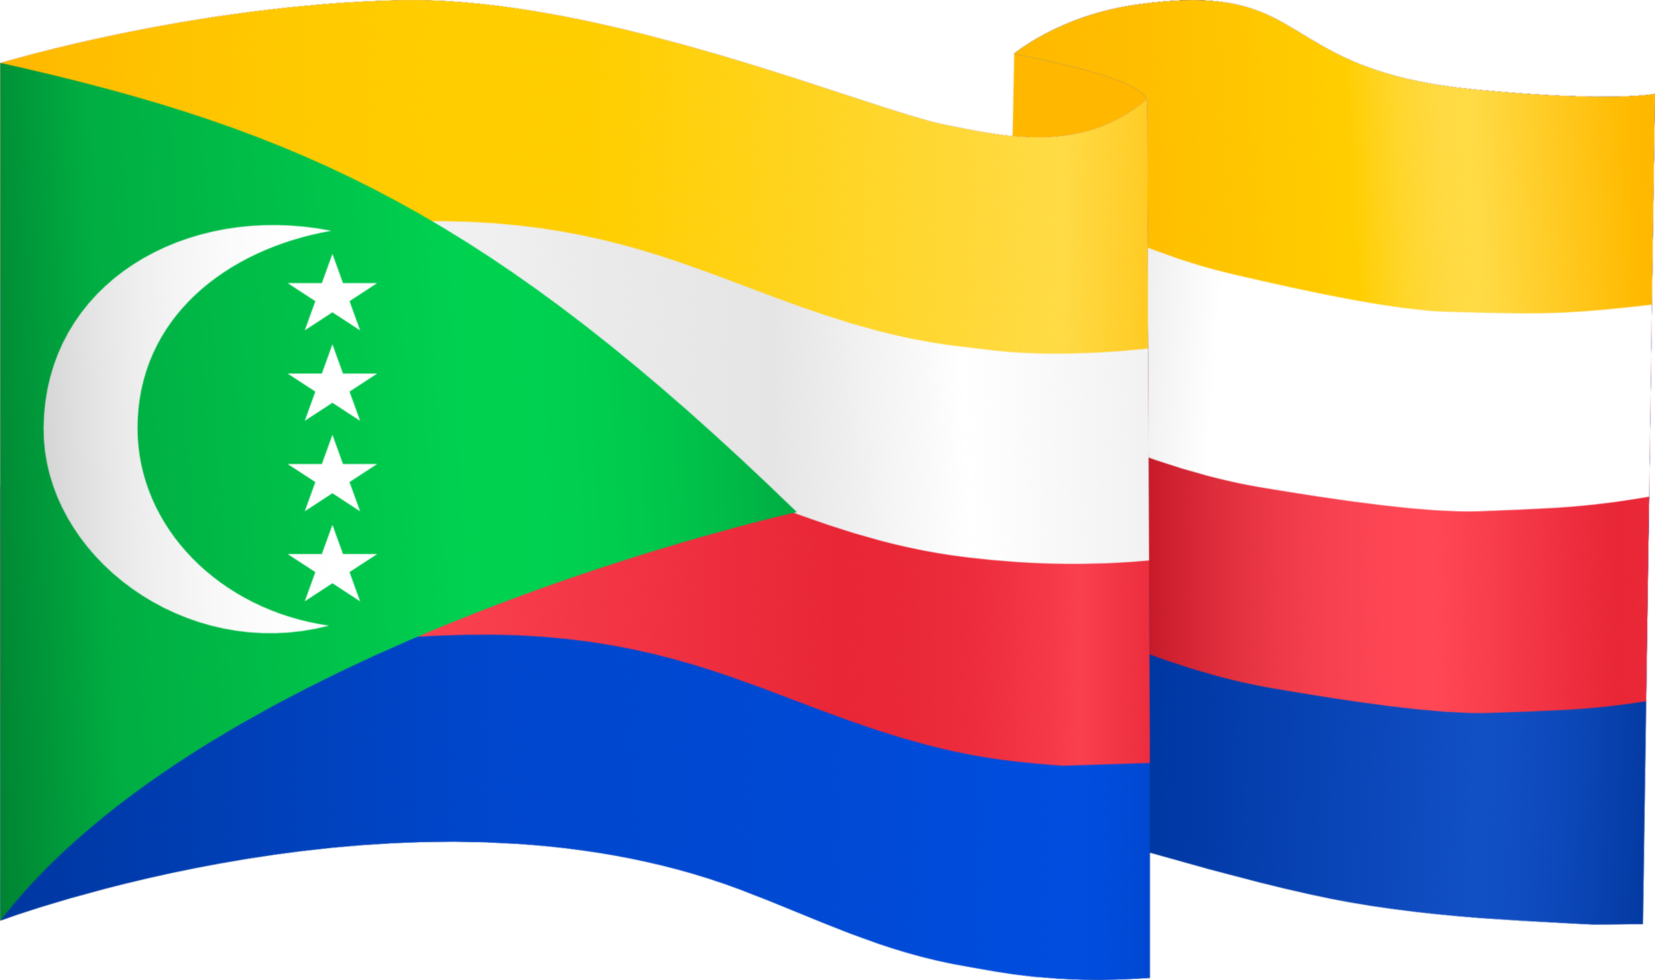 Comores bandeira onda isolado em png ou transparente fundo